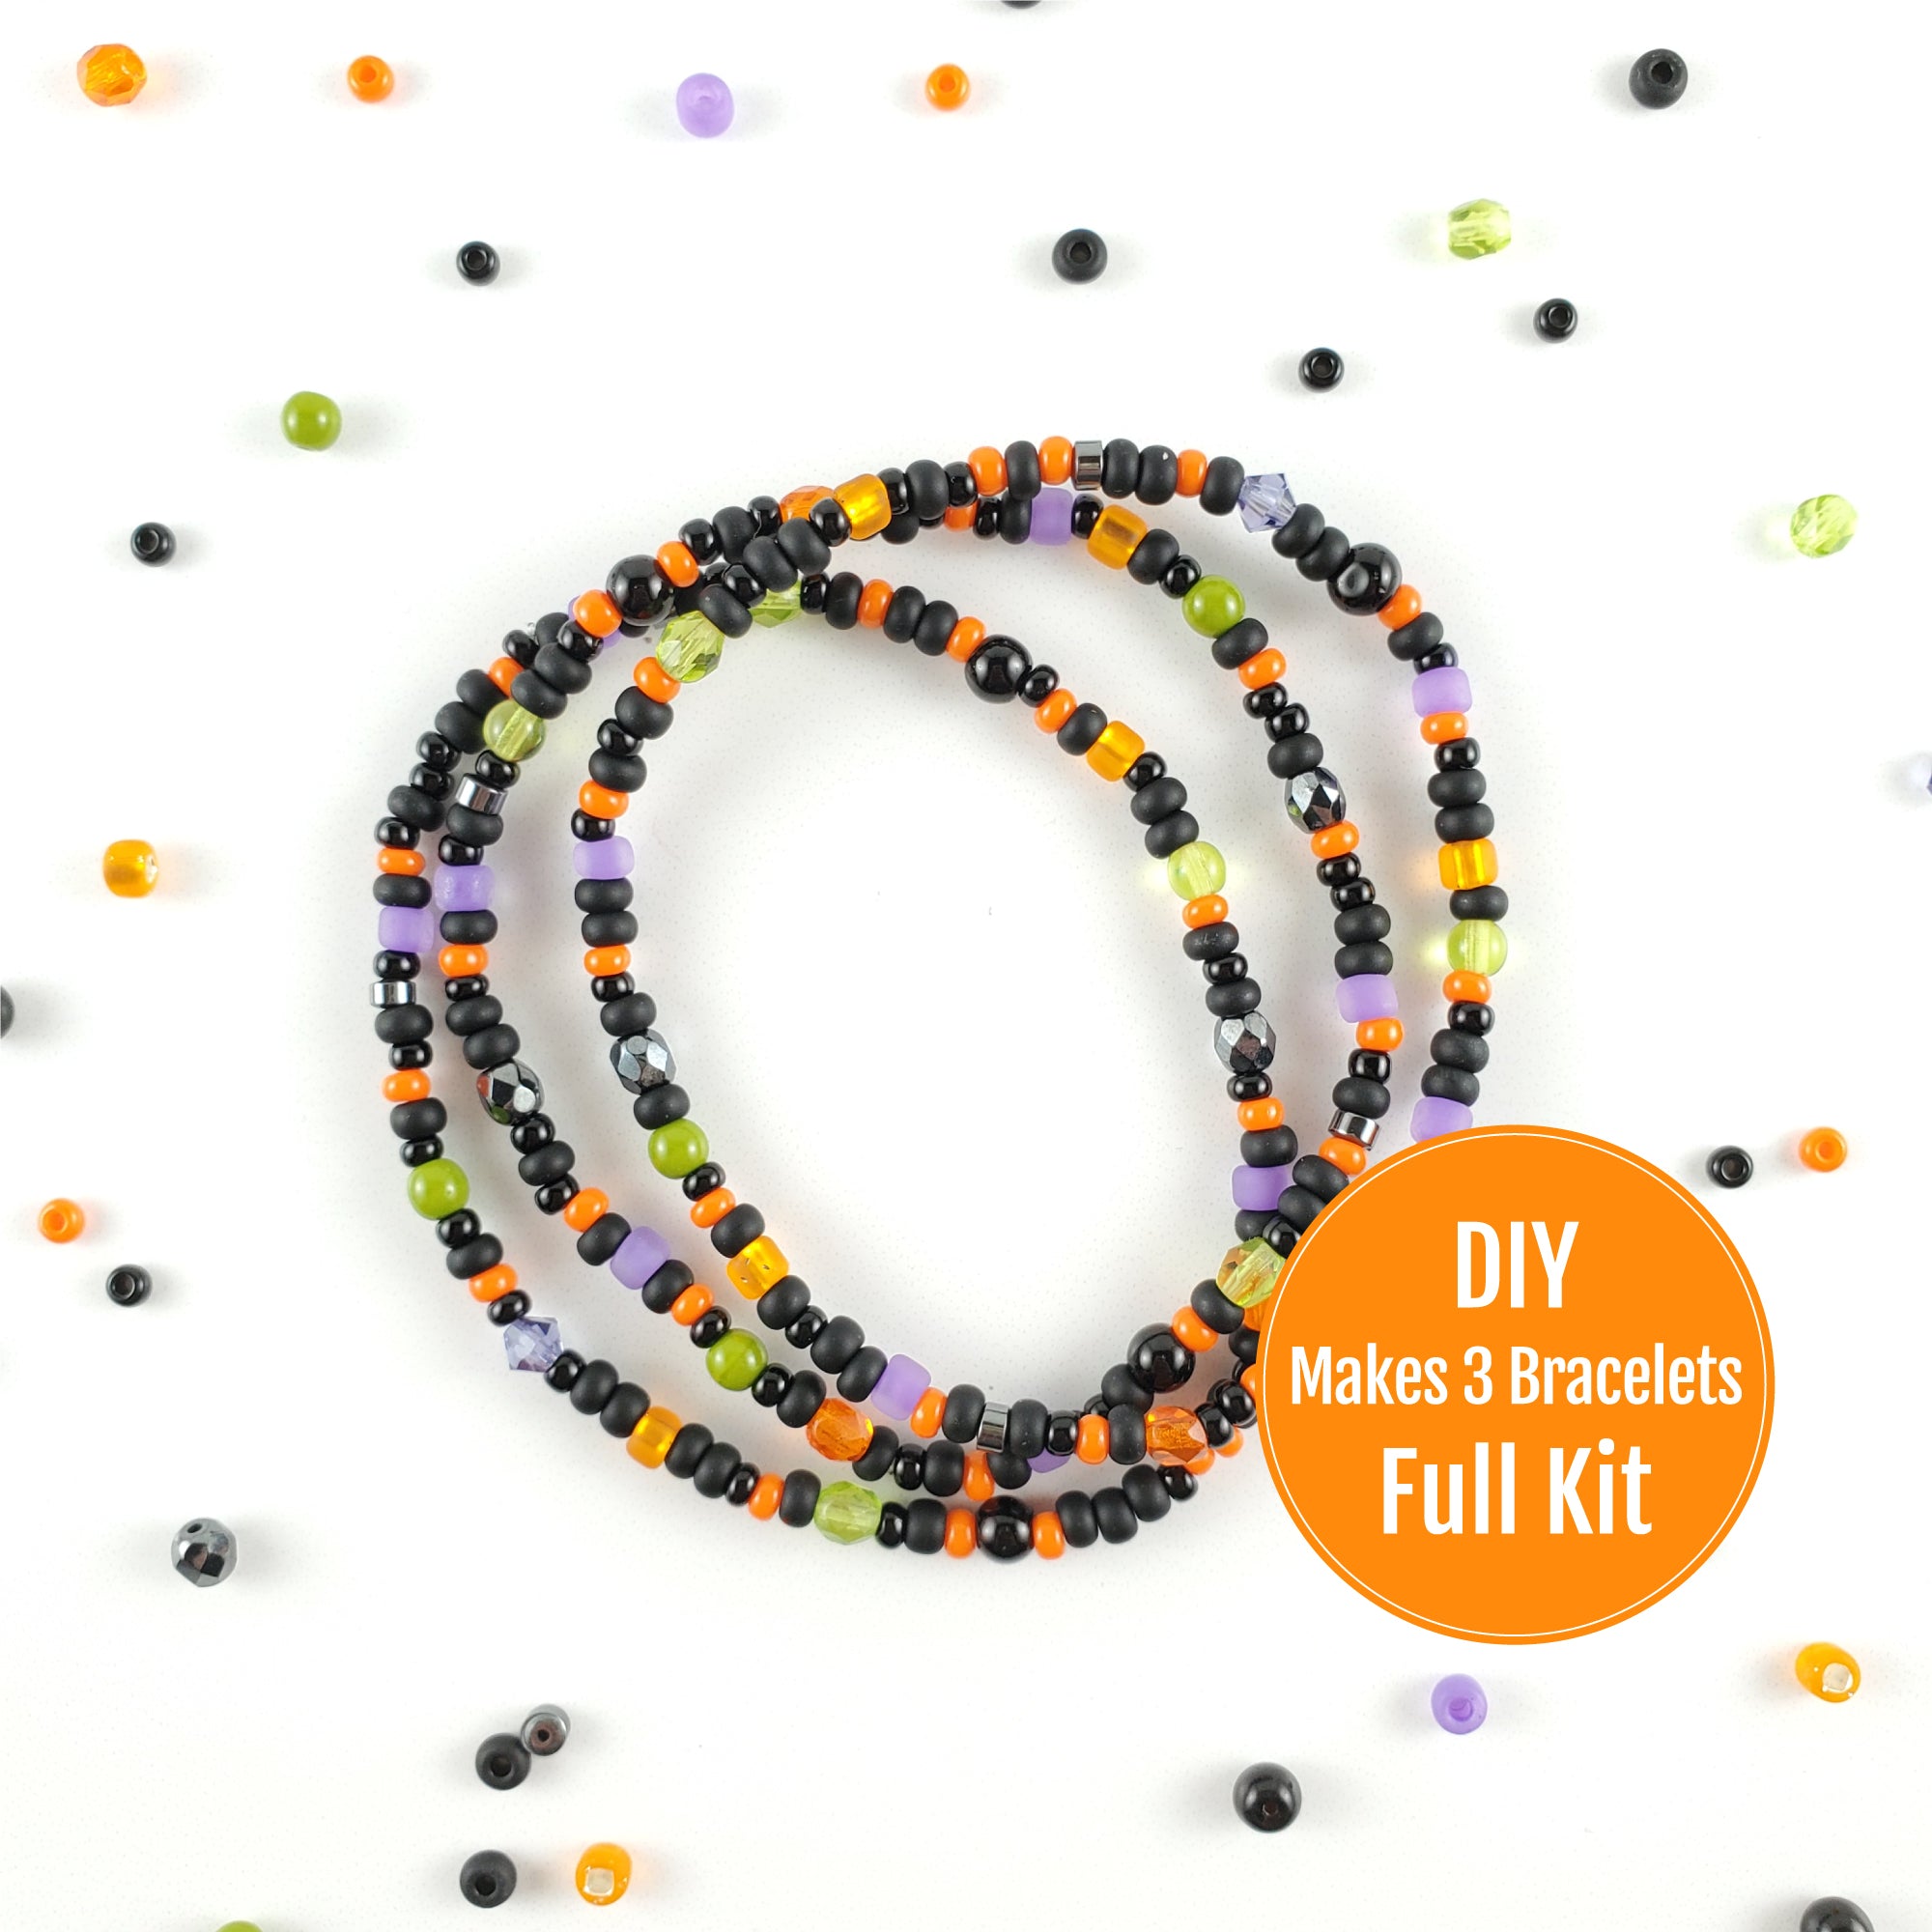 DIY Bracelet Kit - Makes 3 Stretch Bracelets. Free Shipping USA. Halloween.